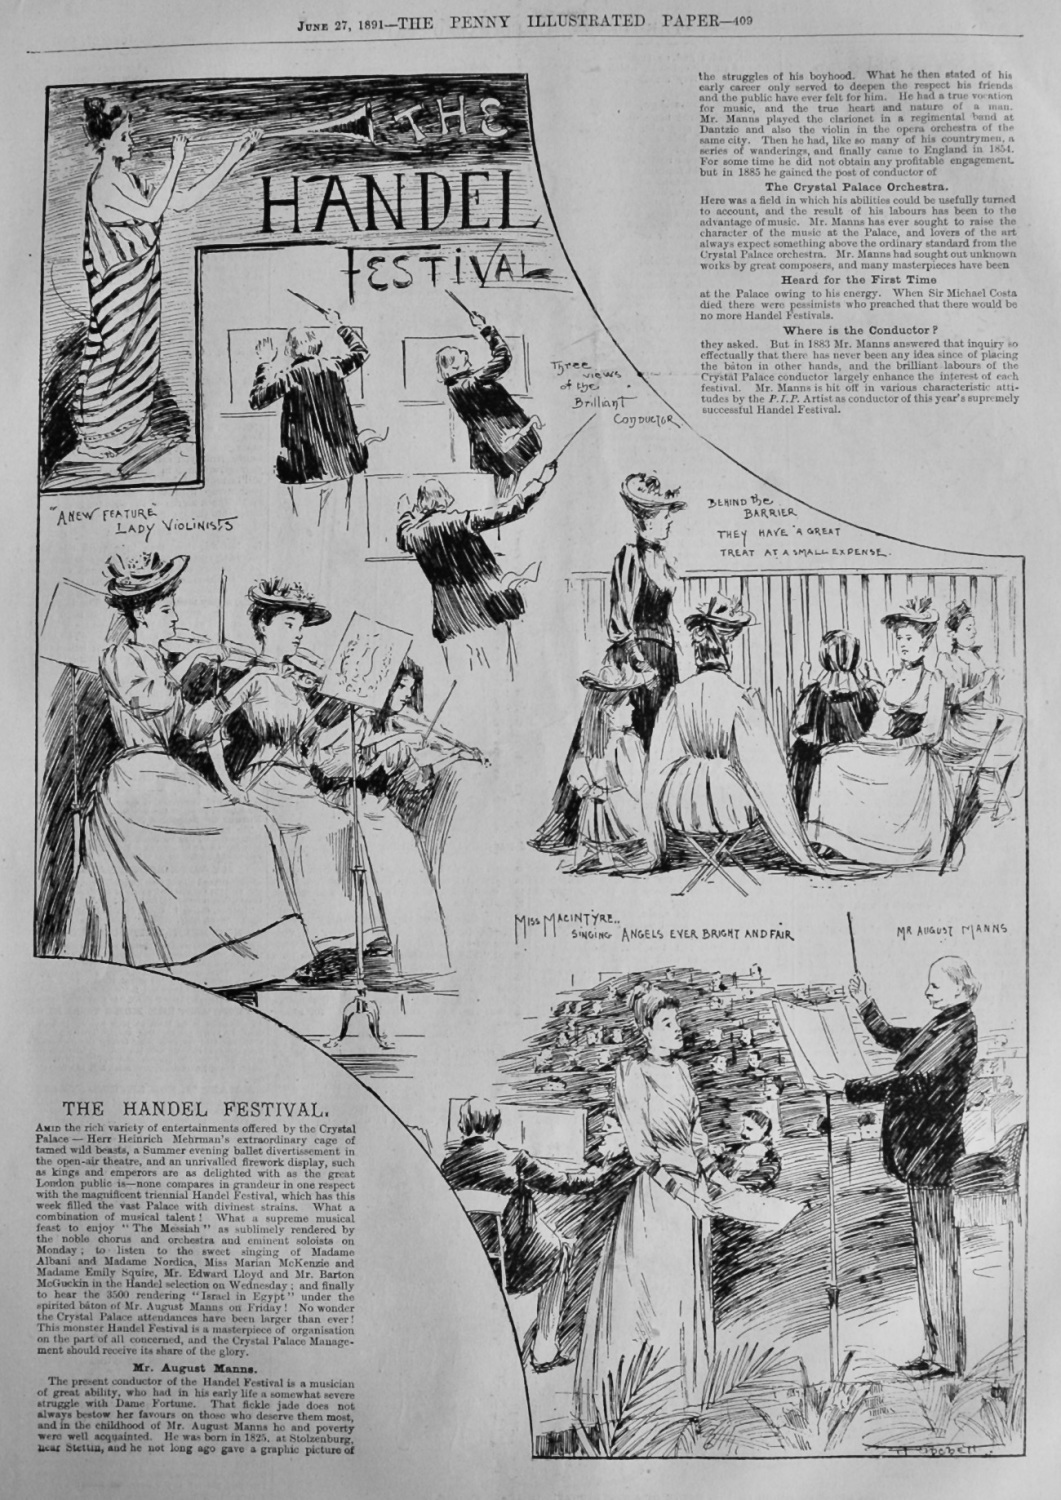 The Handel Festival.  1891.